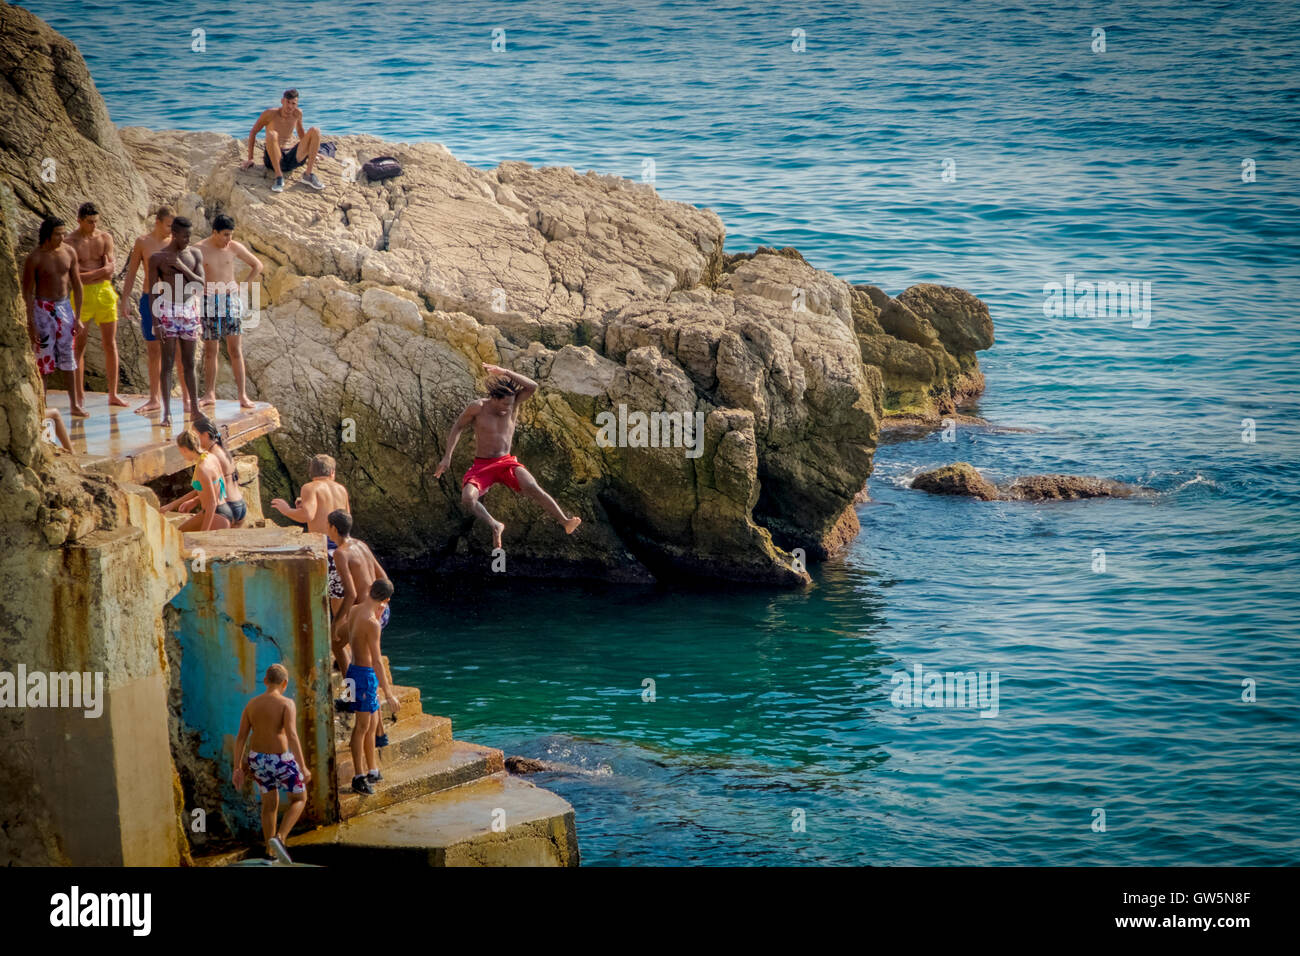 Les jeunes garçons dive off une plate-forme dans les eaux bleues de la mer Méditerranée tandis que d'autres regardent et attendent leur tour Banque D'Images